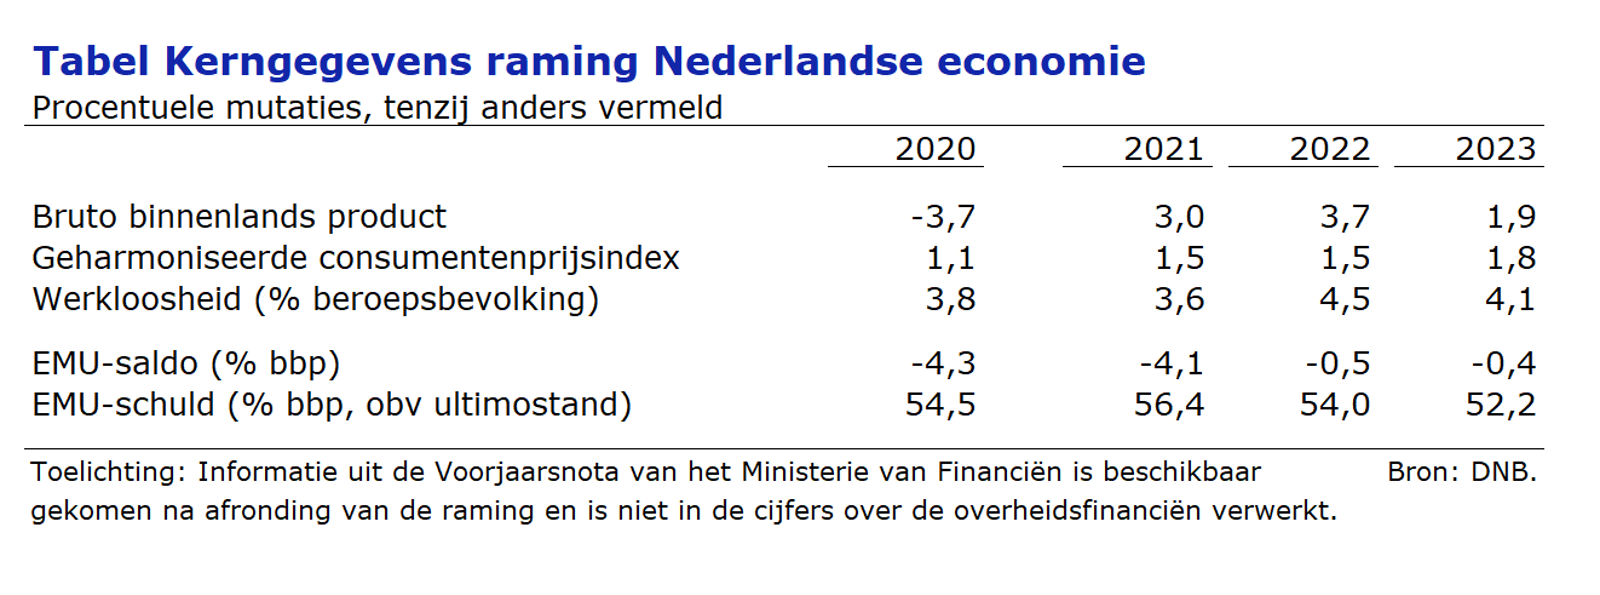 Kerngegevens voor de raming van de Nederlandse economie